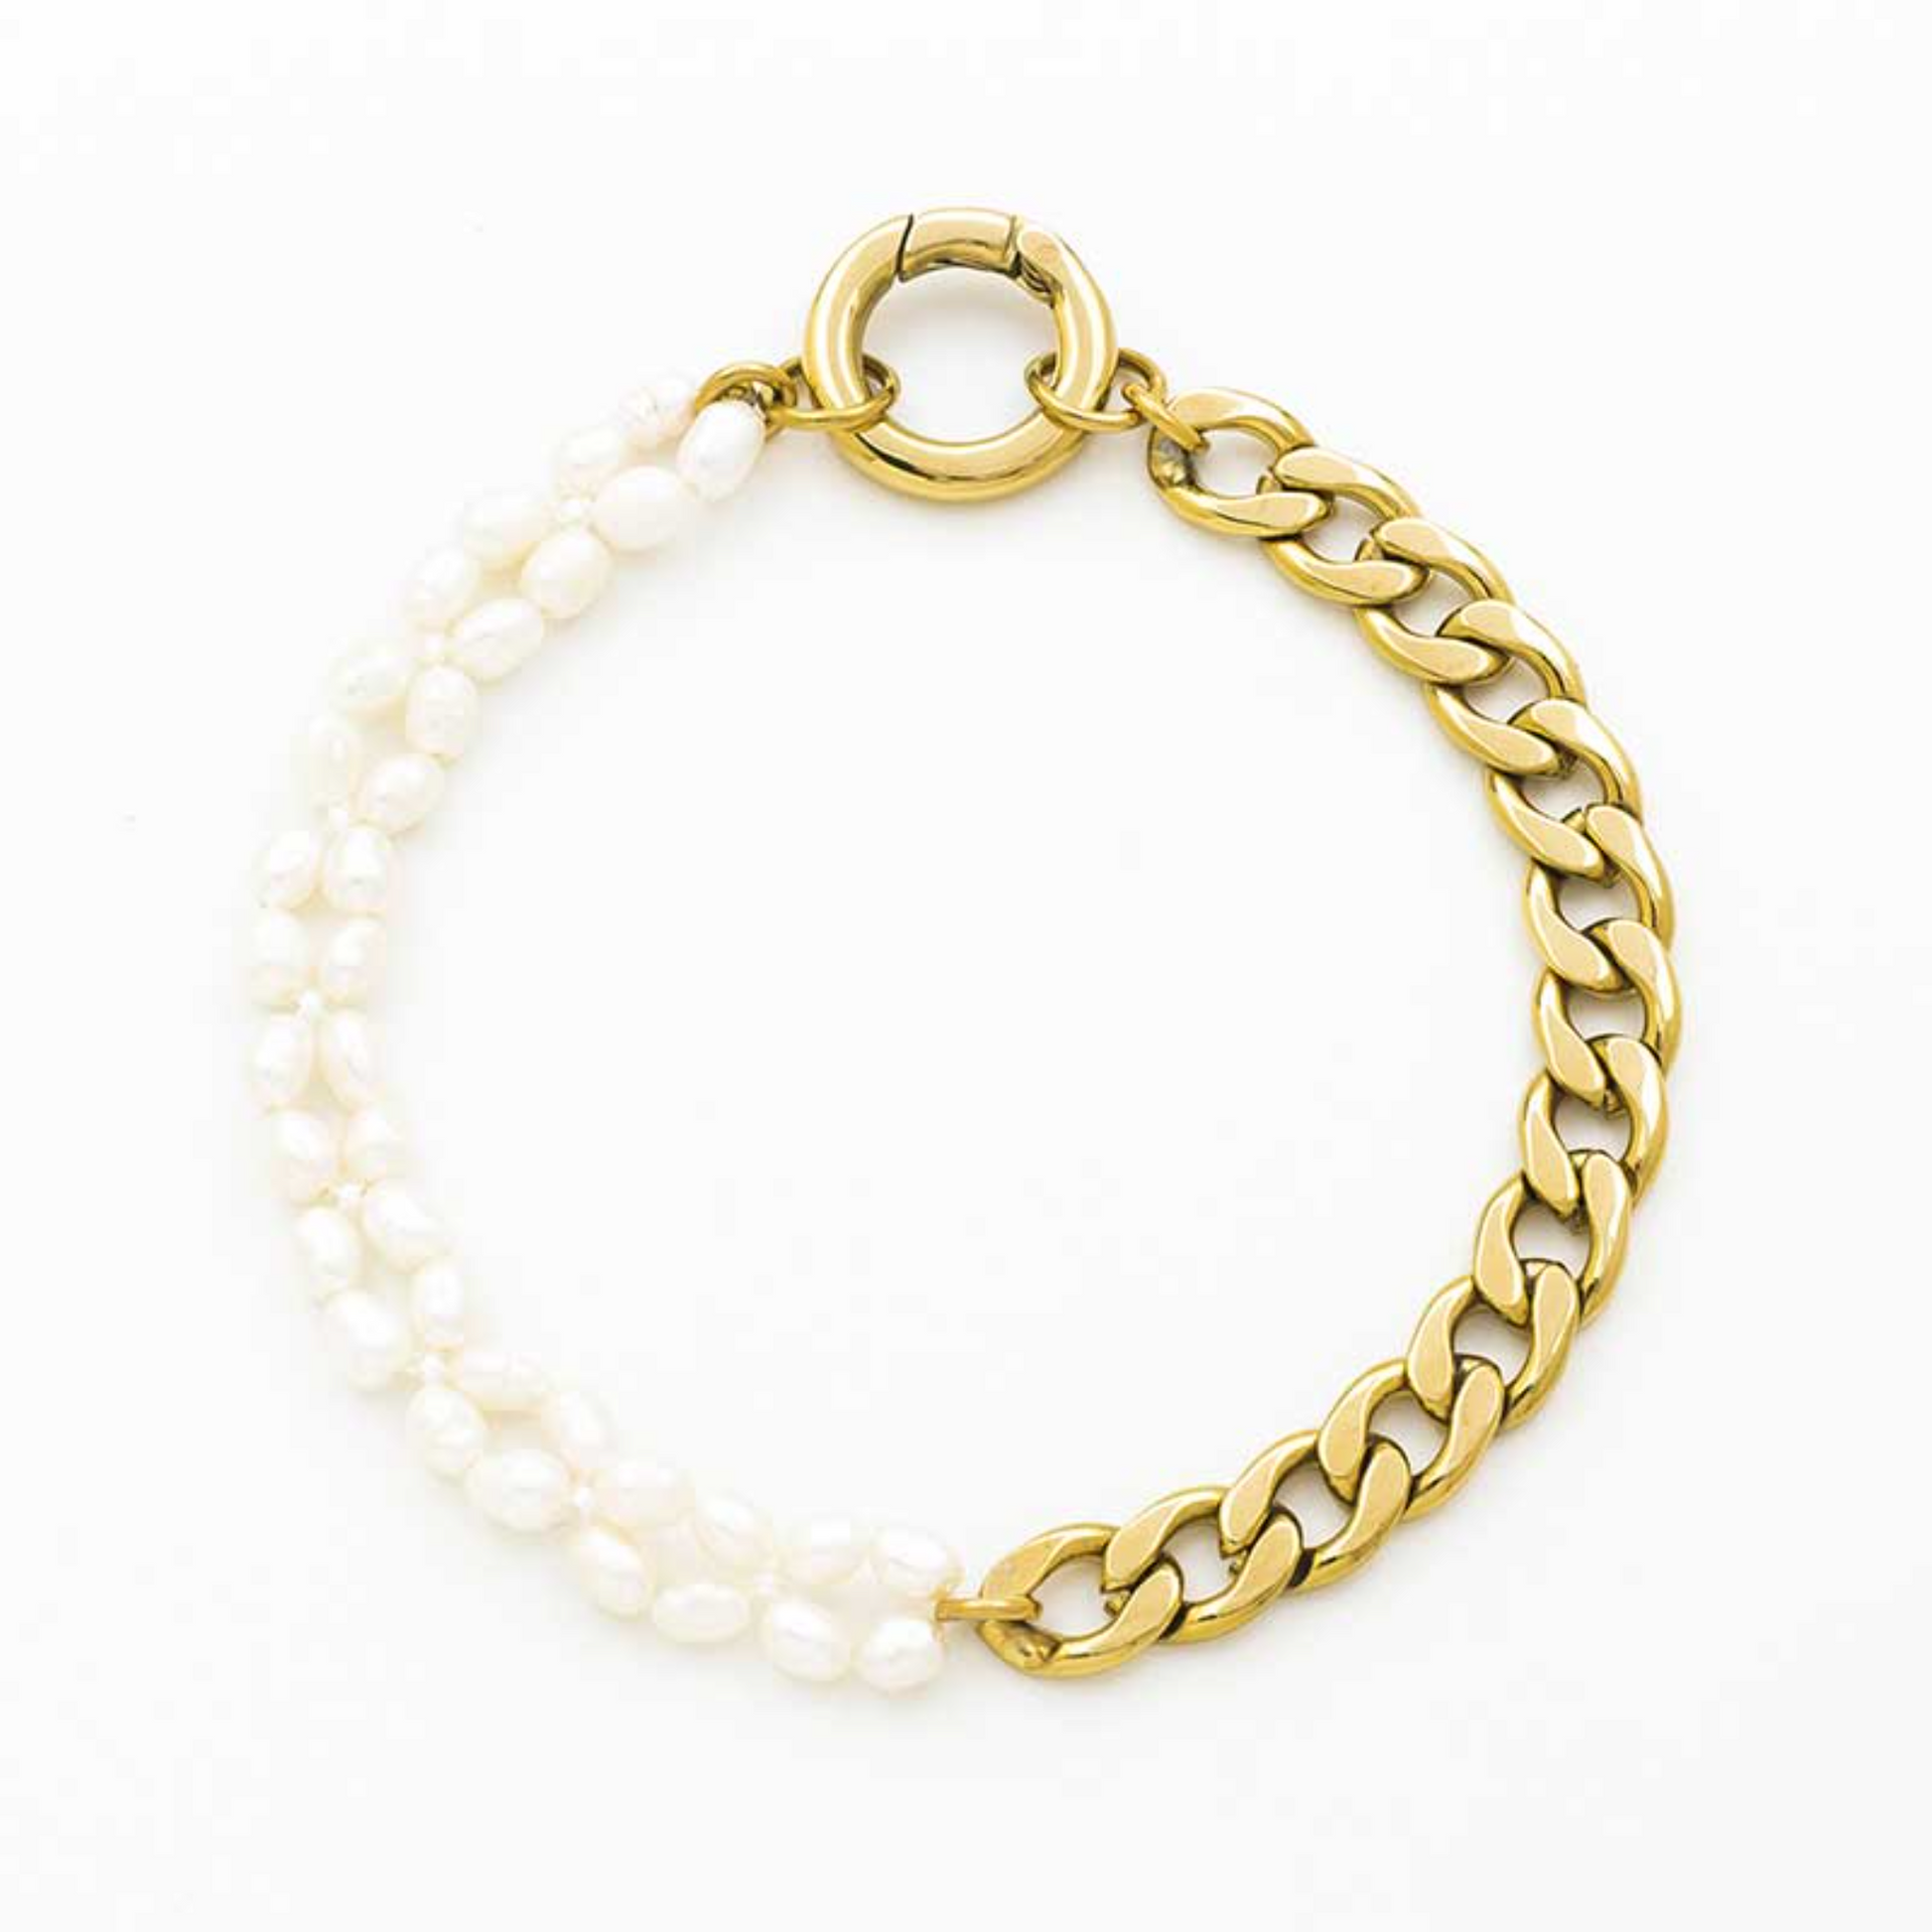 Vergoldetes Armband mit Kettengliedern, ungleichmäßigen Perlen und auffälligem Ringverschluss – urbaner Chic trifft natürliche Eleganz